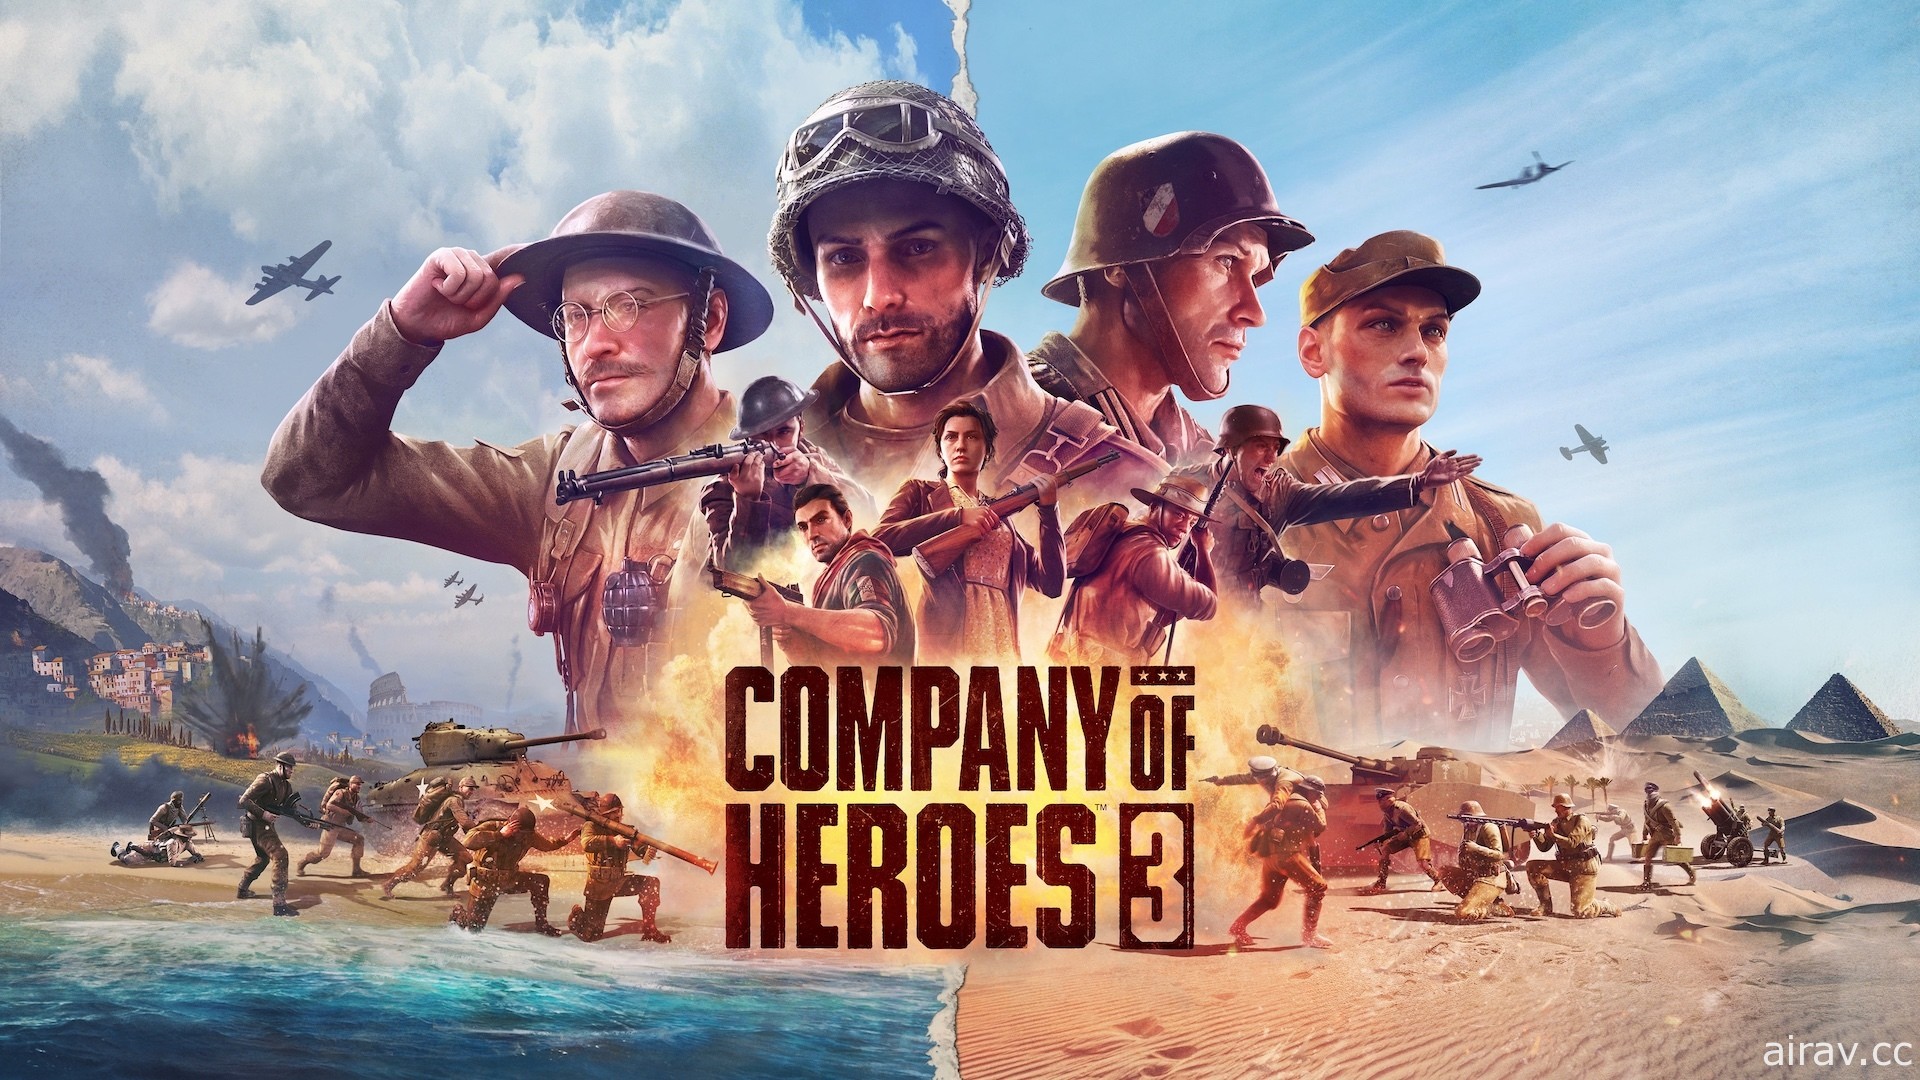 《英雄連隊 3》釋出美術與考究影片 前往地中海挑戰更豐富的戰略層次